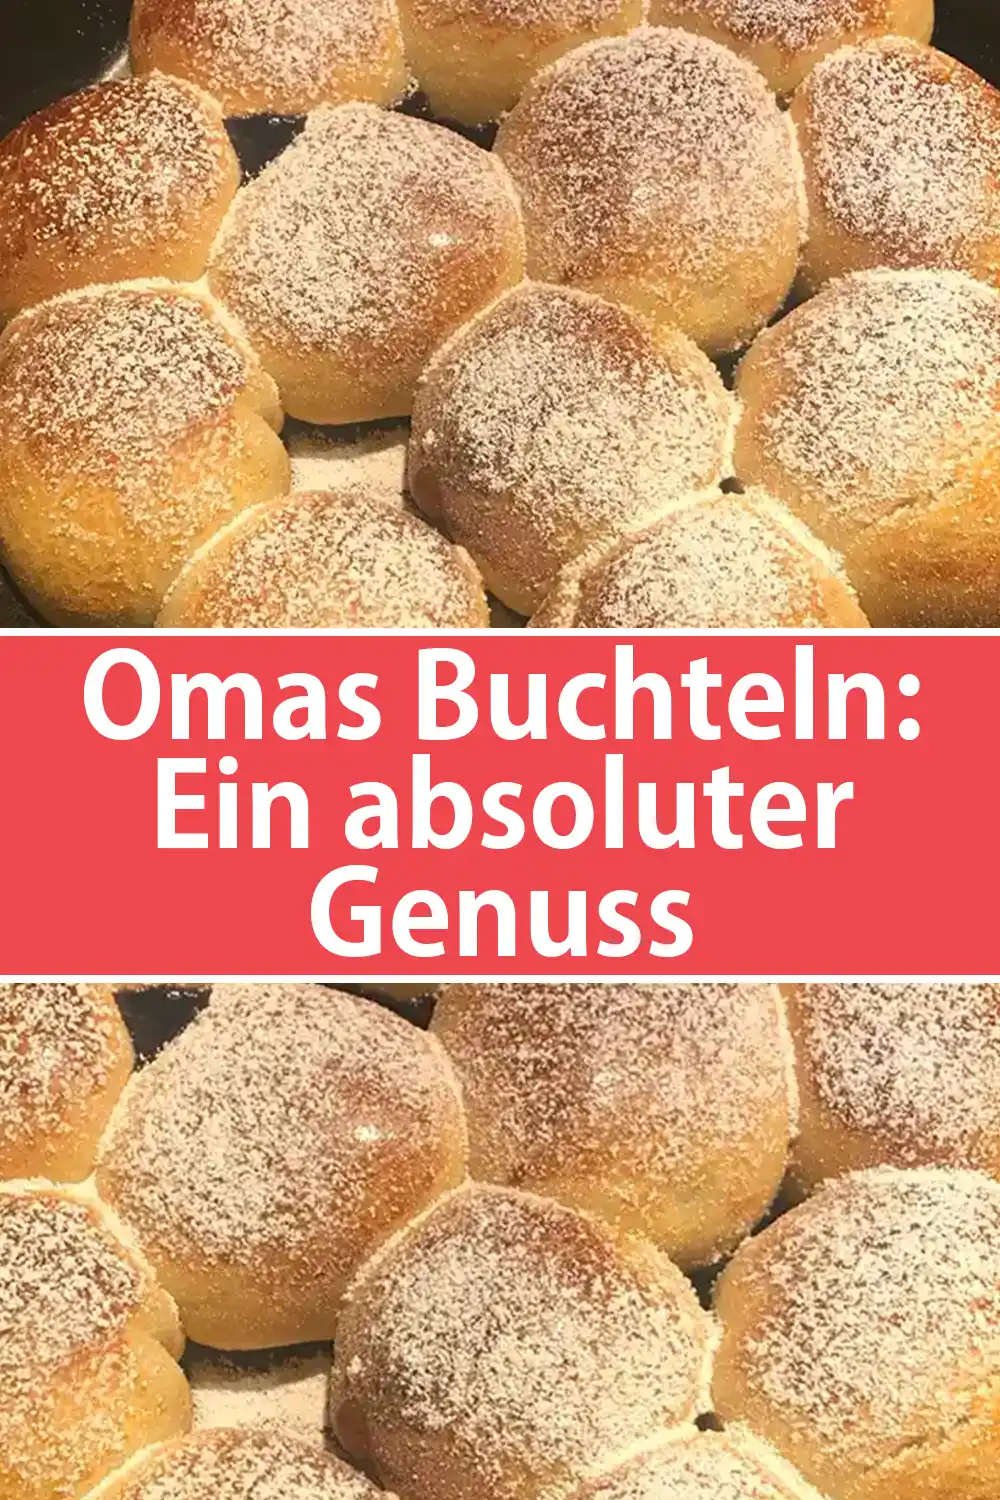 Omas Buchteln - Ein absoluter Genuss, der auch am dritten Tag wie frisch gebacken schmeckt!